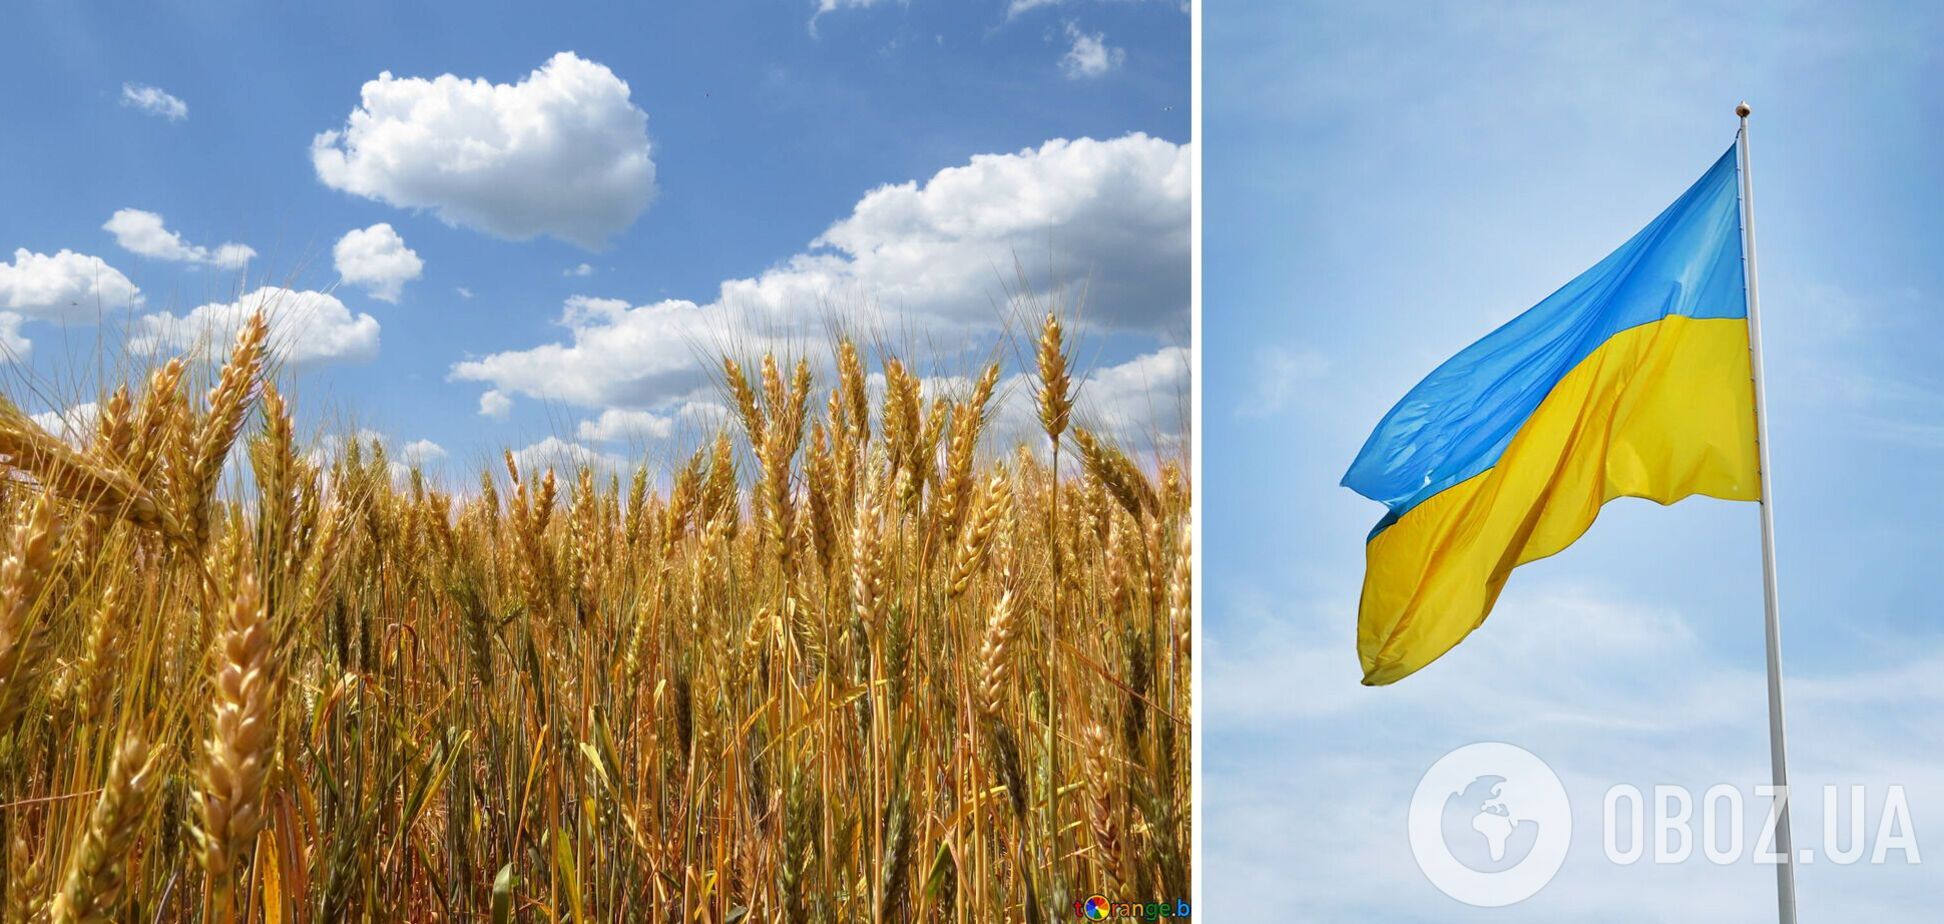 Черговий етап переговорів між Україною та Росією щодо 'зернової угоди' заплановано на 3 травня